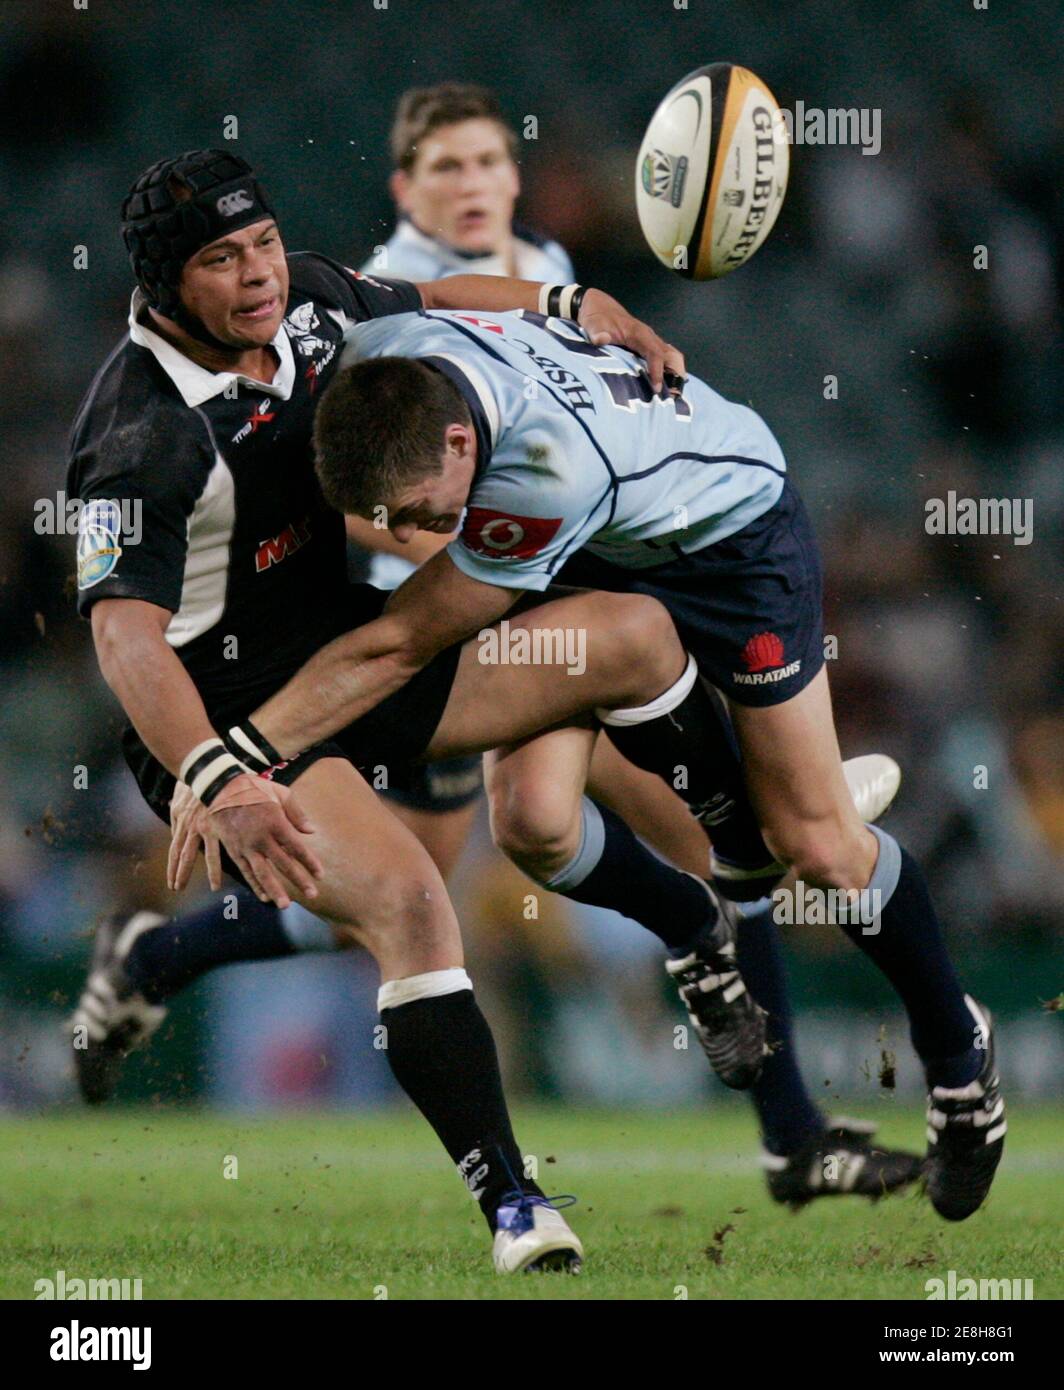 Der Ball kommt aus Australien (L) befasst sich Adrian Jacobs der Haie von South Africa (R) während ihrer Super 14 Halbfinale Rugby Spiel in Sydney 24. Mai 2008 als Rob Horne von der Waratahs lose. REUTERS / Willen Burgess (Australien) Stockfoto